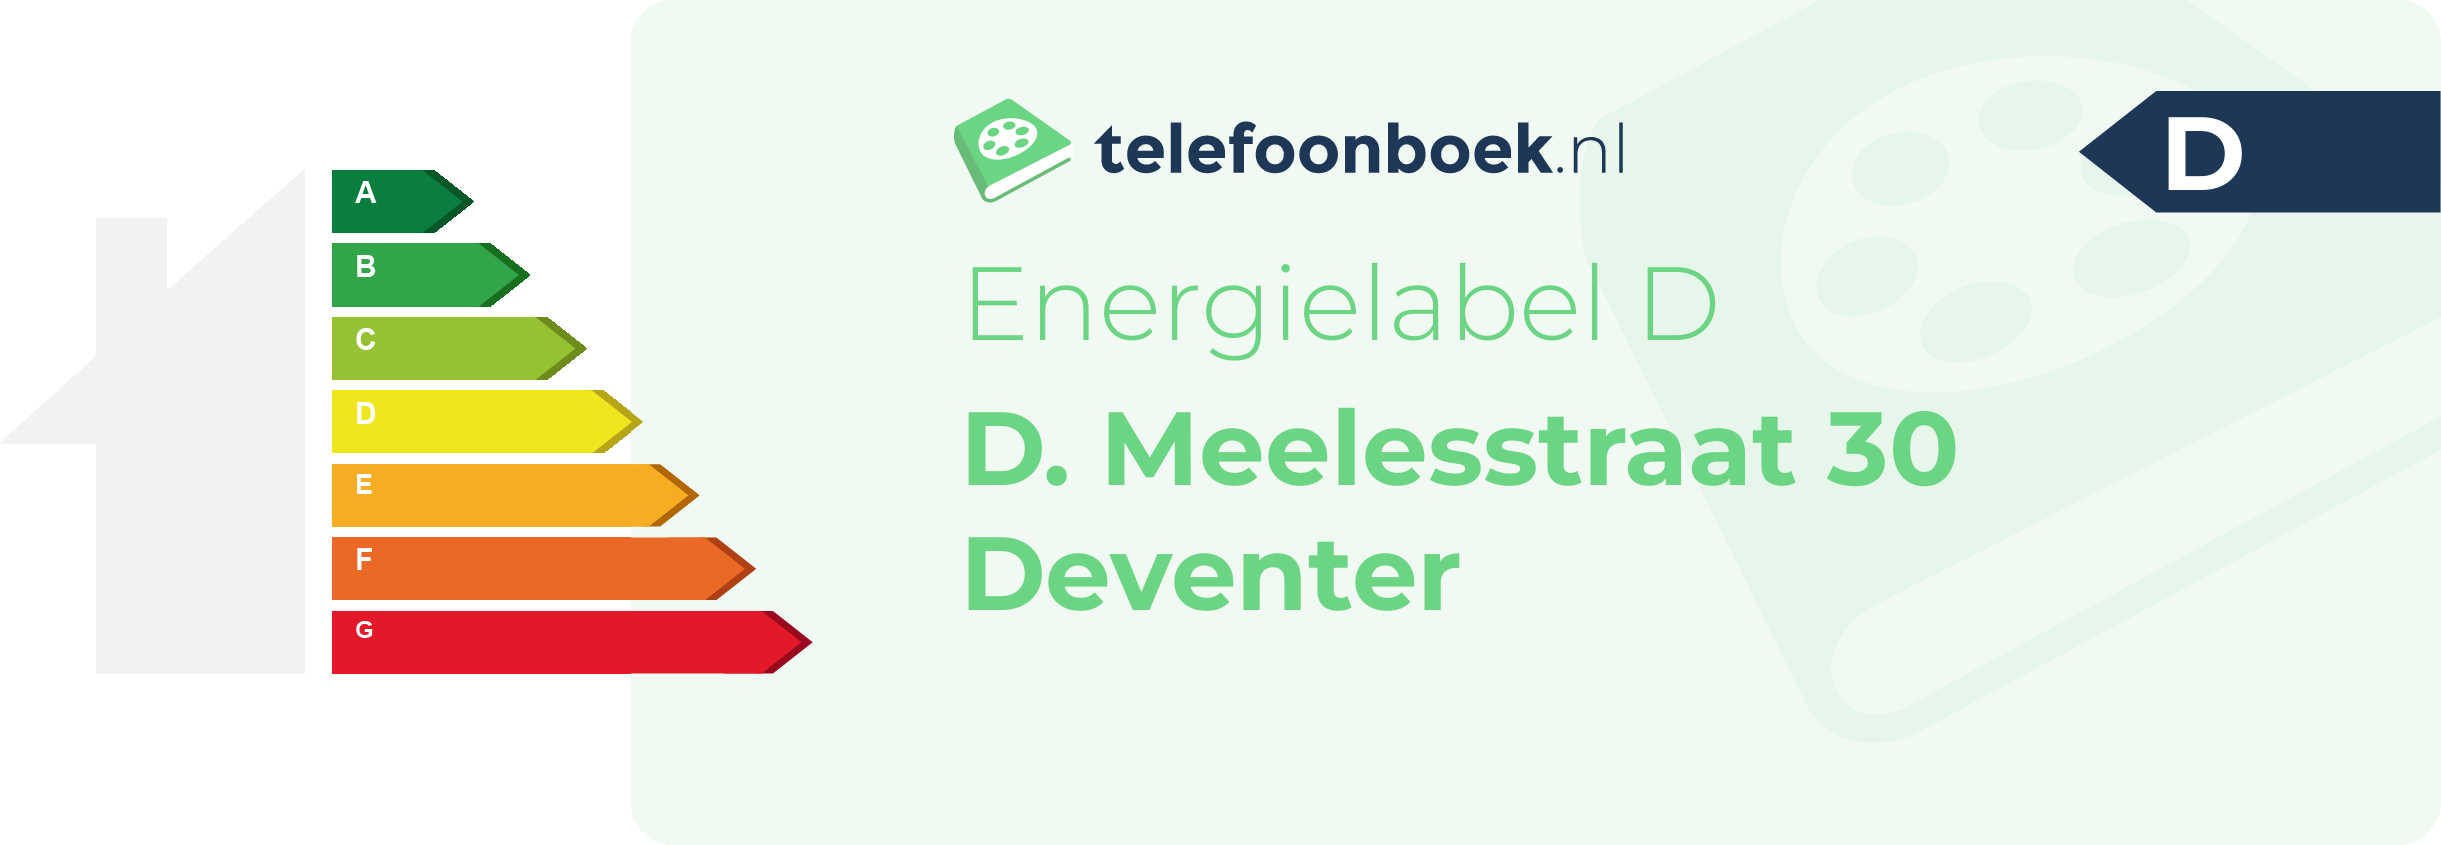 Energielabel D. Meelesstraat 30 Deventer